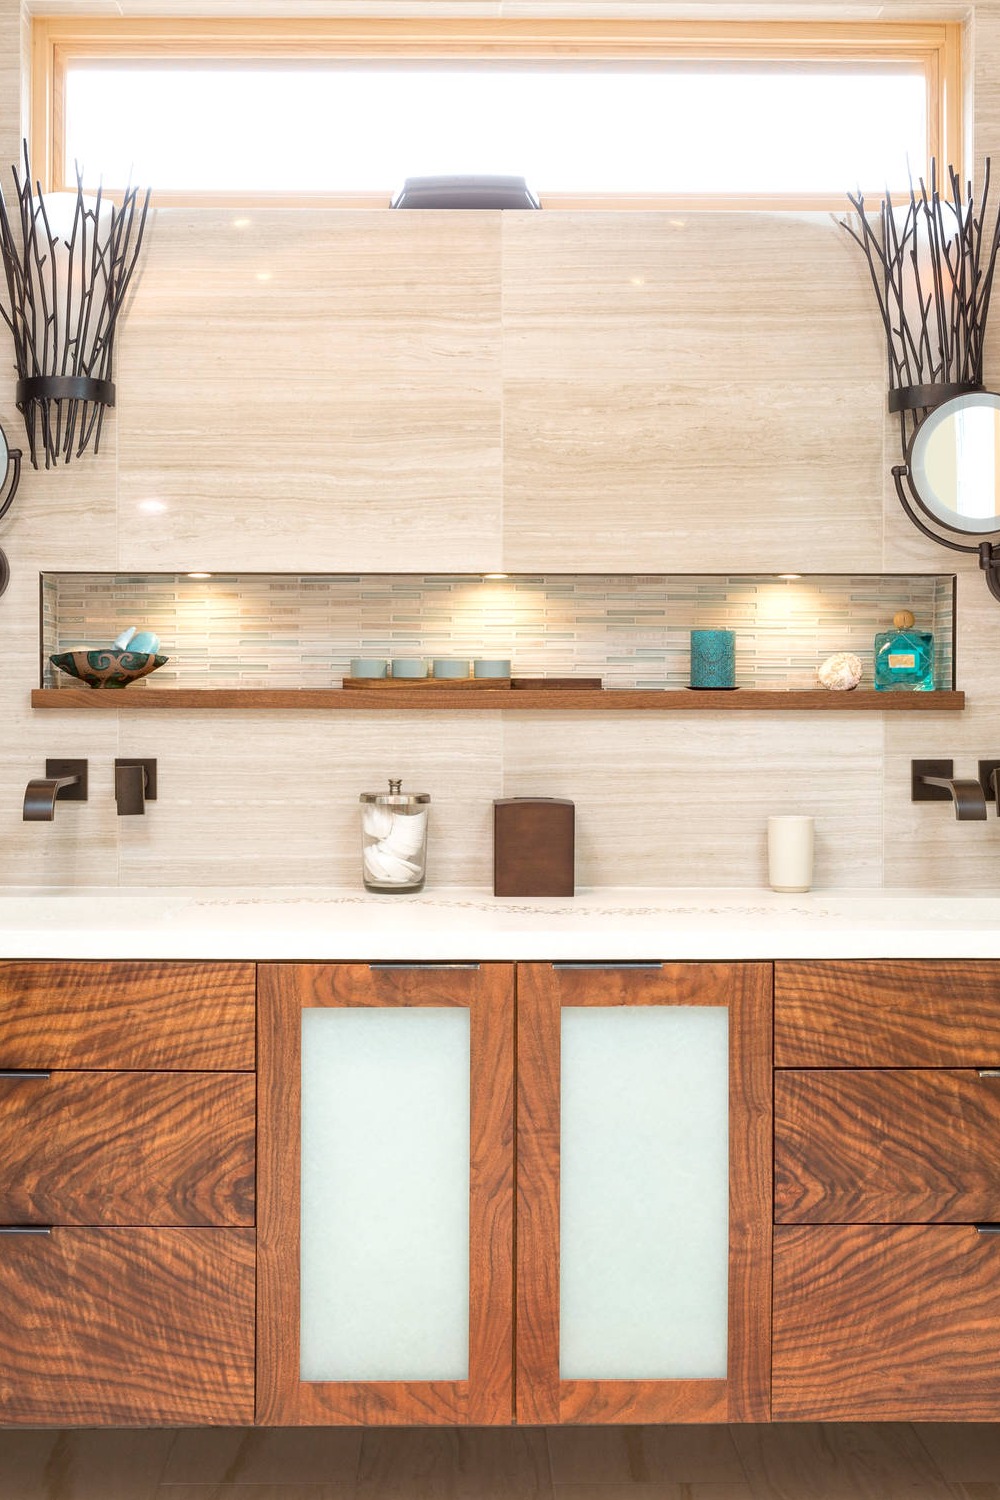 Bathroom Backsplash Ideas Wall Vanity Modern Wood Marble Countertop Behind Ceramic Material Space Sinks